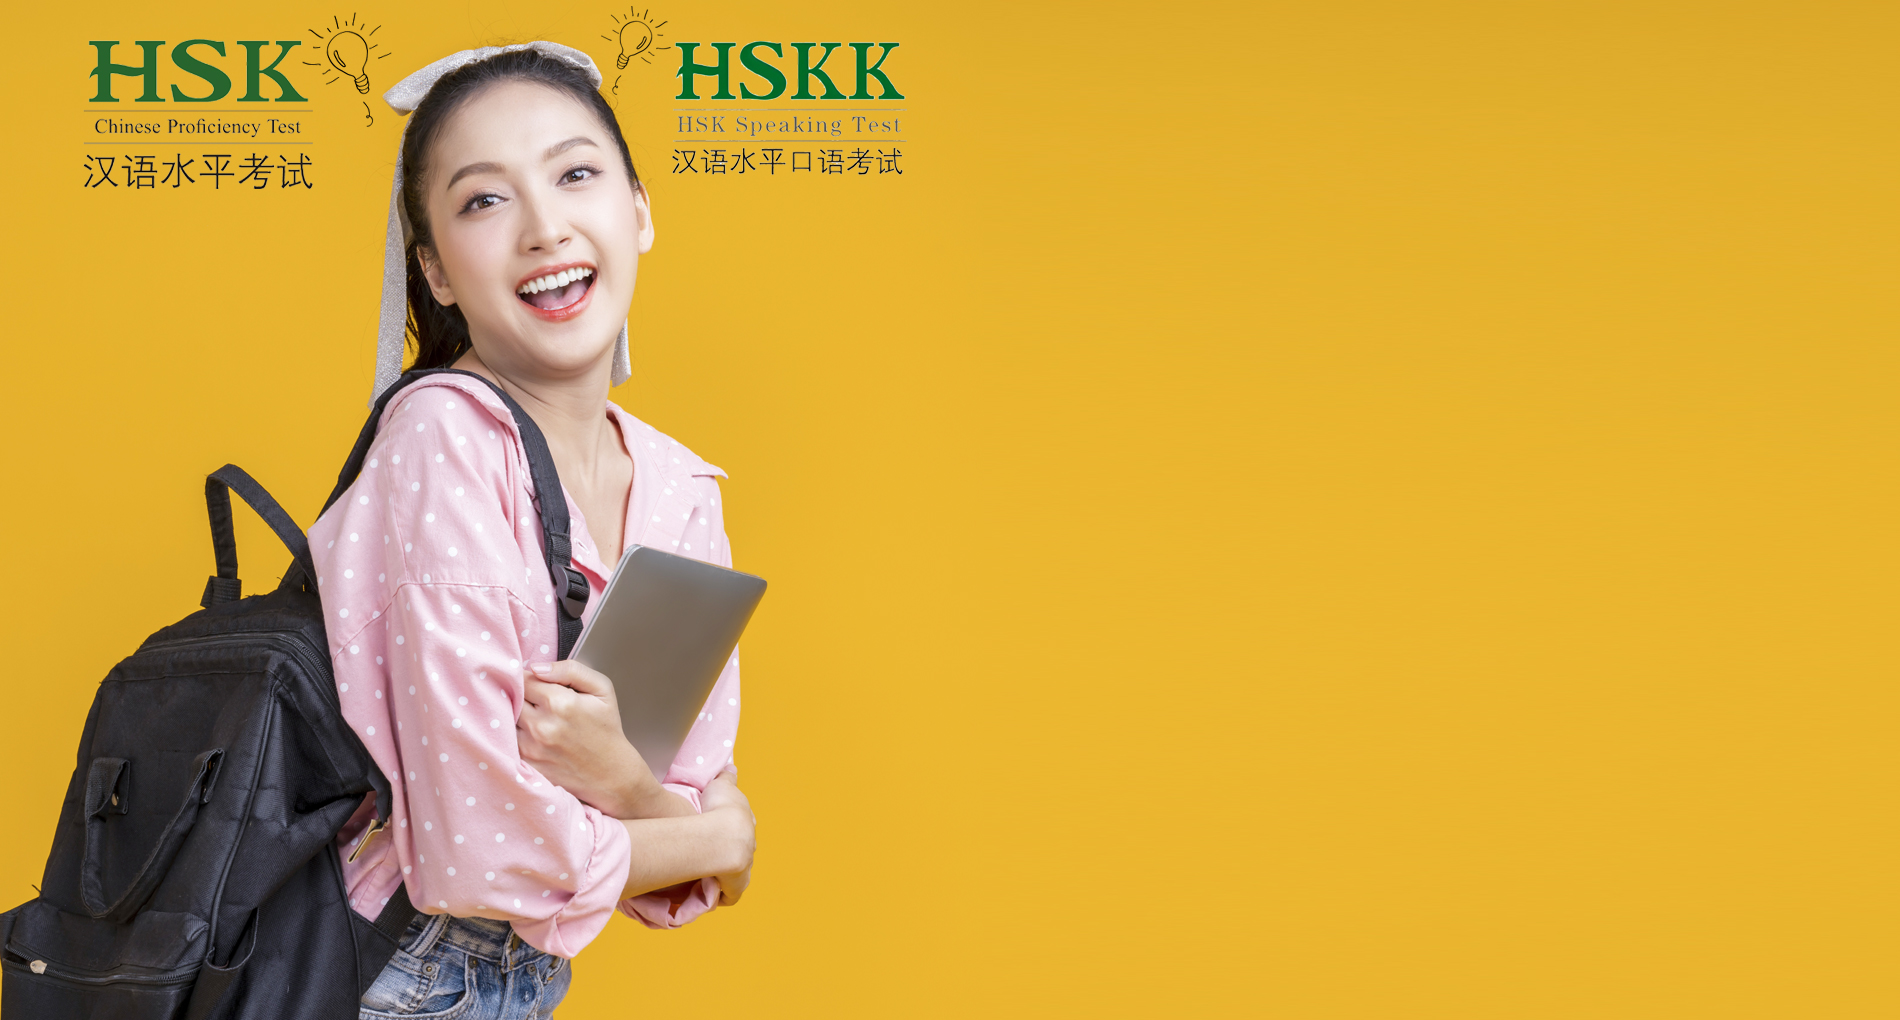 การสอบวัดระดับความรู้ภาษาจีน HSK